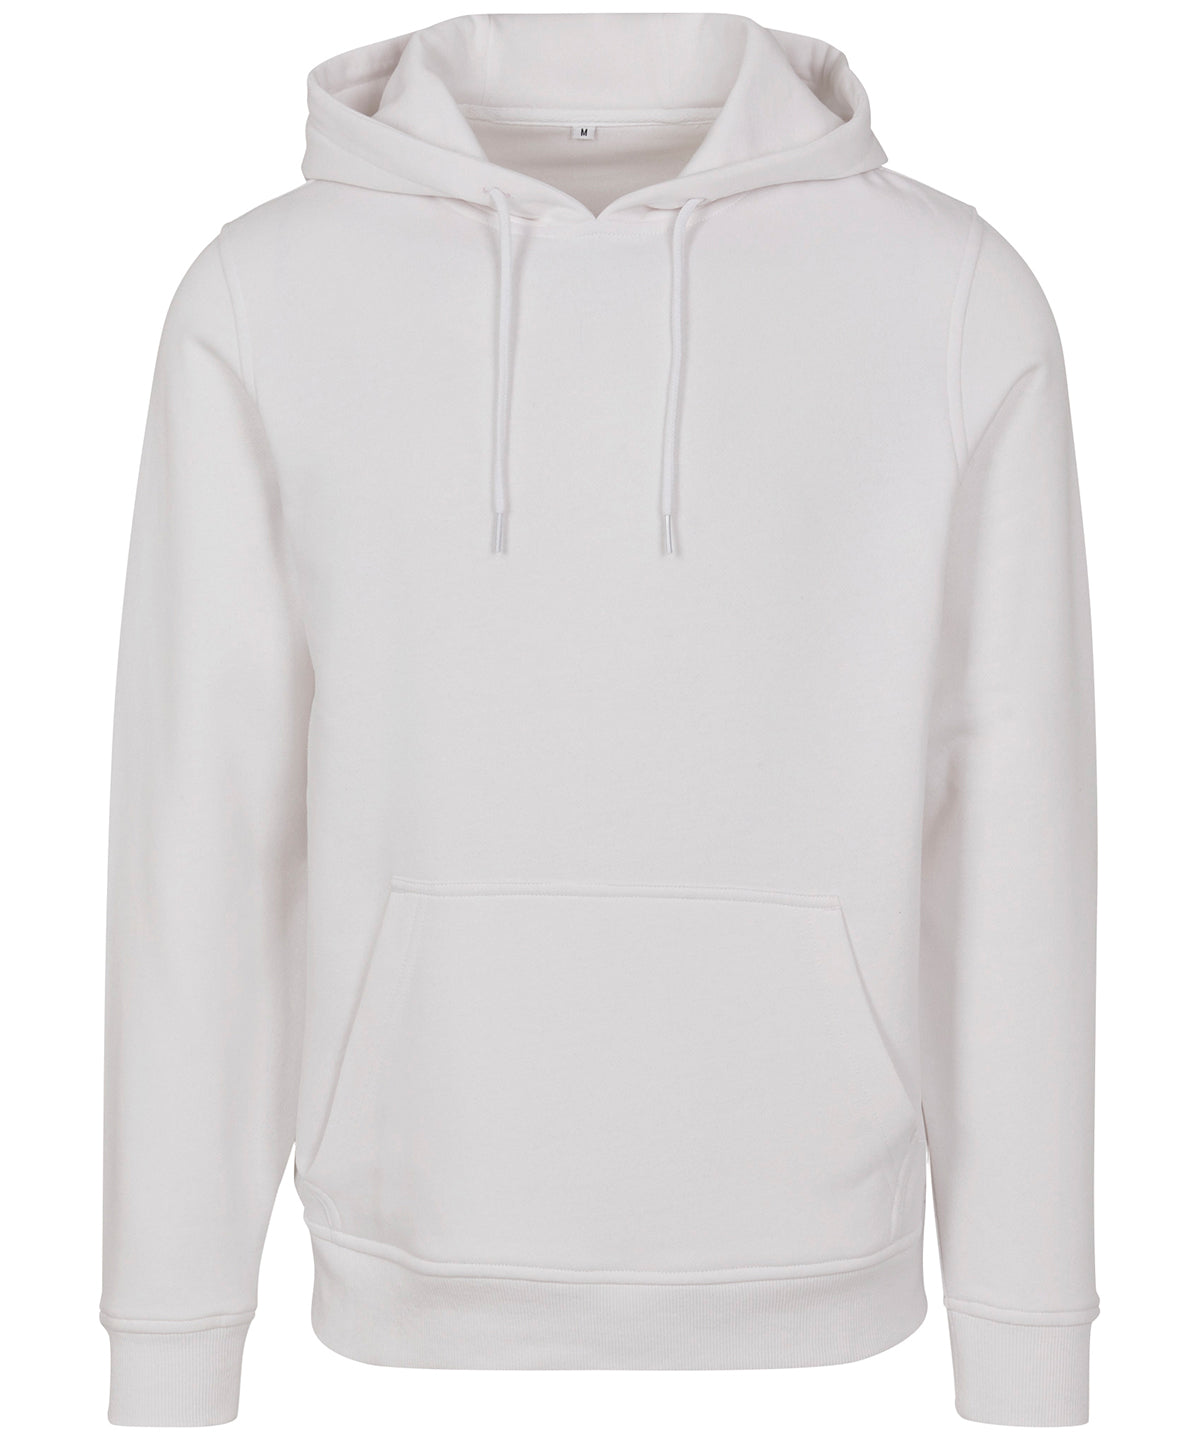 Personalised Hoodies - Black Build Your Brand Merch hoodie